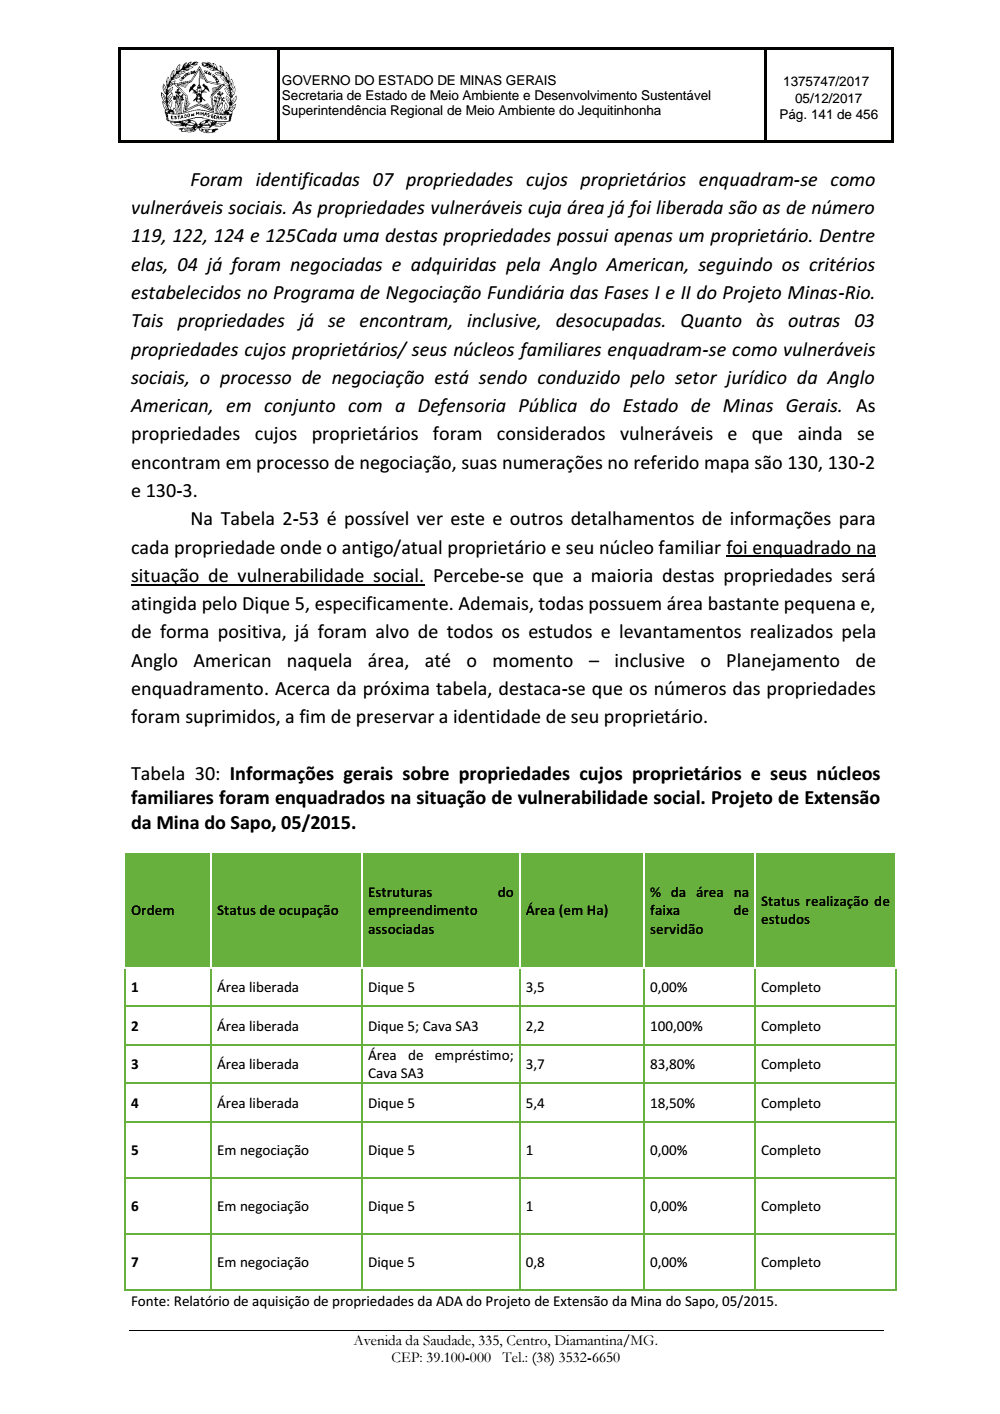 Page 141 from Parecer único da Secretaria de estado de Meio Ambiente e Desenvolvimento Sustentável (SEMAD)